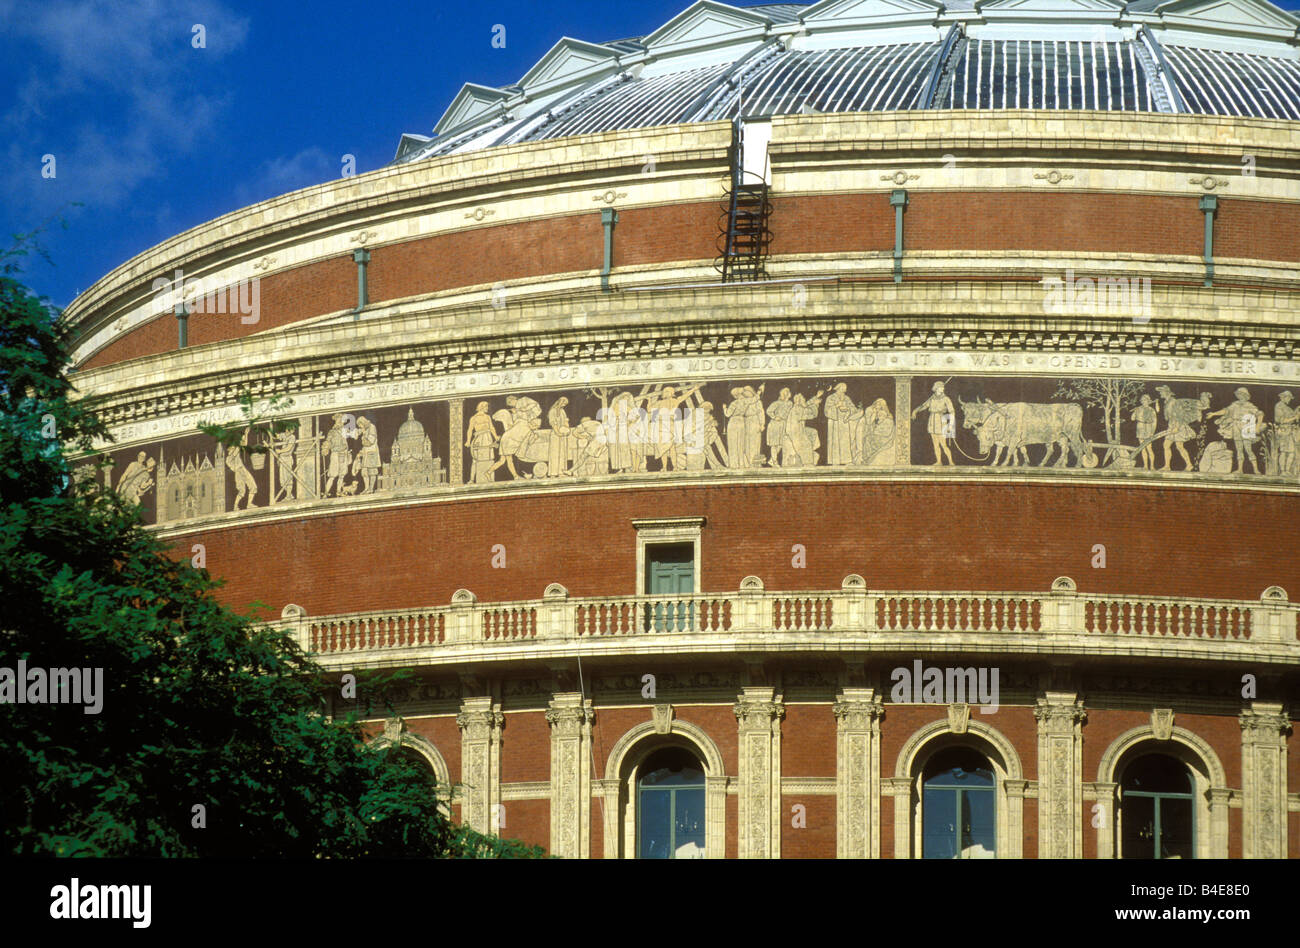 Piatto fregio in terracotta attorno alla circonferenza della Royal Albert Hall che rappresentano i valori e le innovazioni dell'epoca vittoriana, London, Regno Unito Foto Stock